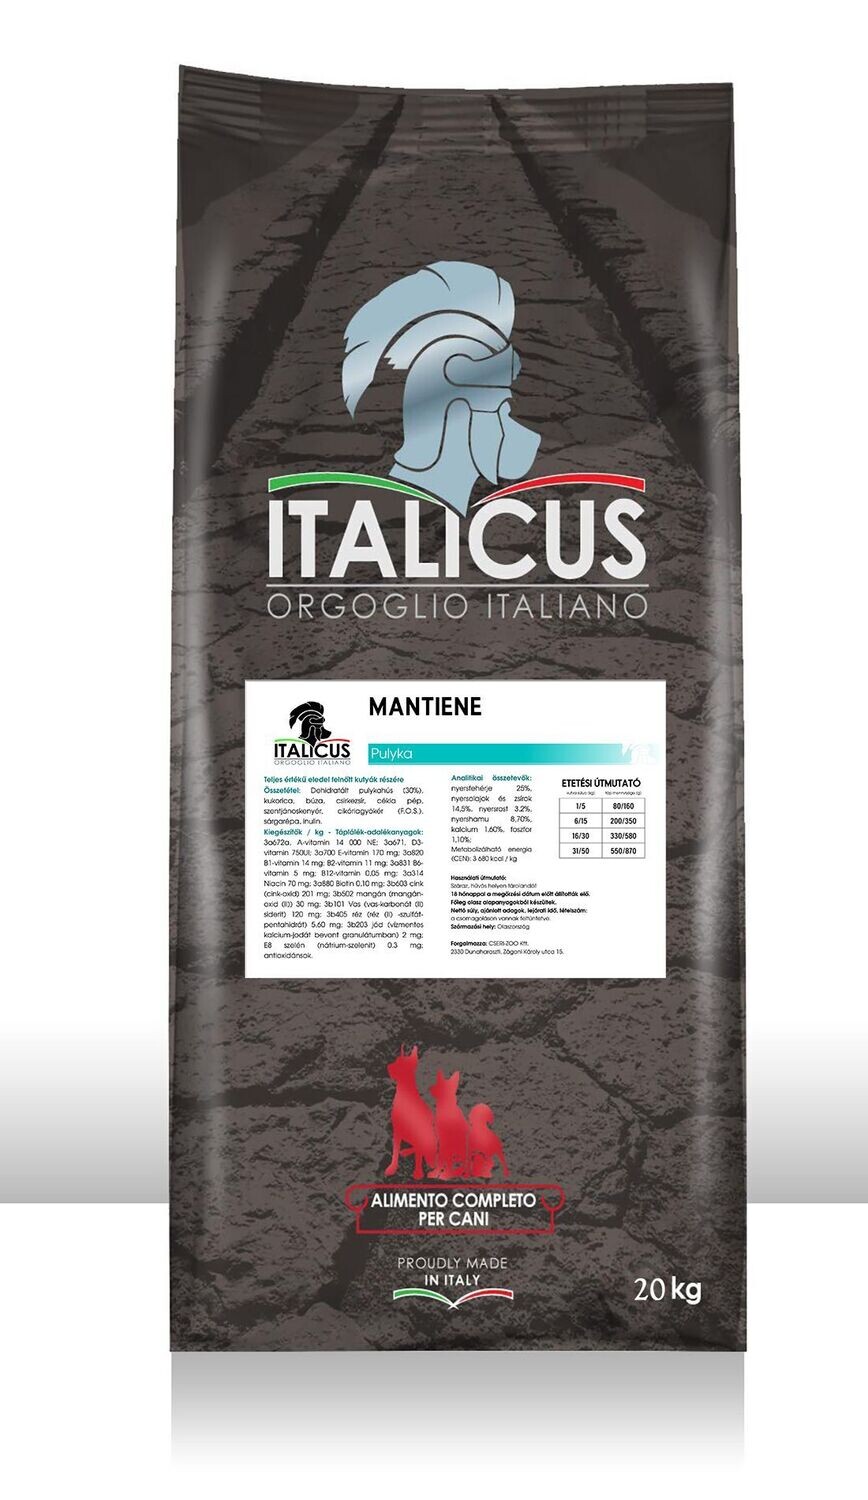 ITALICUS MANTIENE - a gazdaságos megoldás! 20 kg!